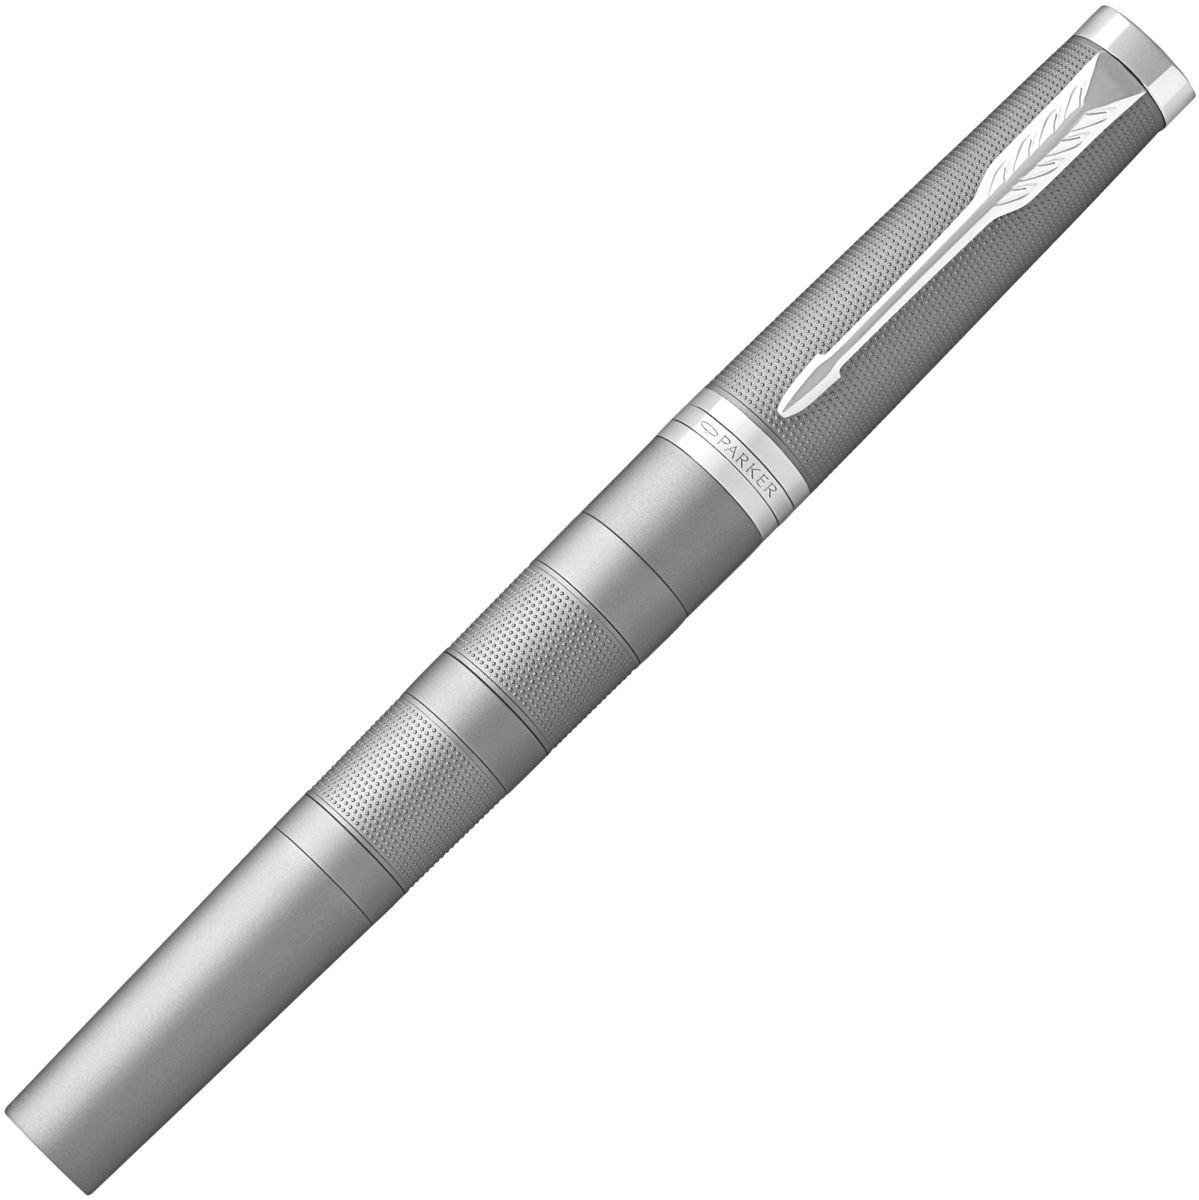 Ручка 5й пишущий узел Parker Ingenuity Large F504, Chrome Colored CT, фото 2